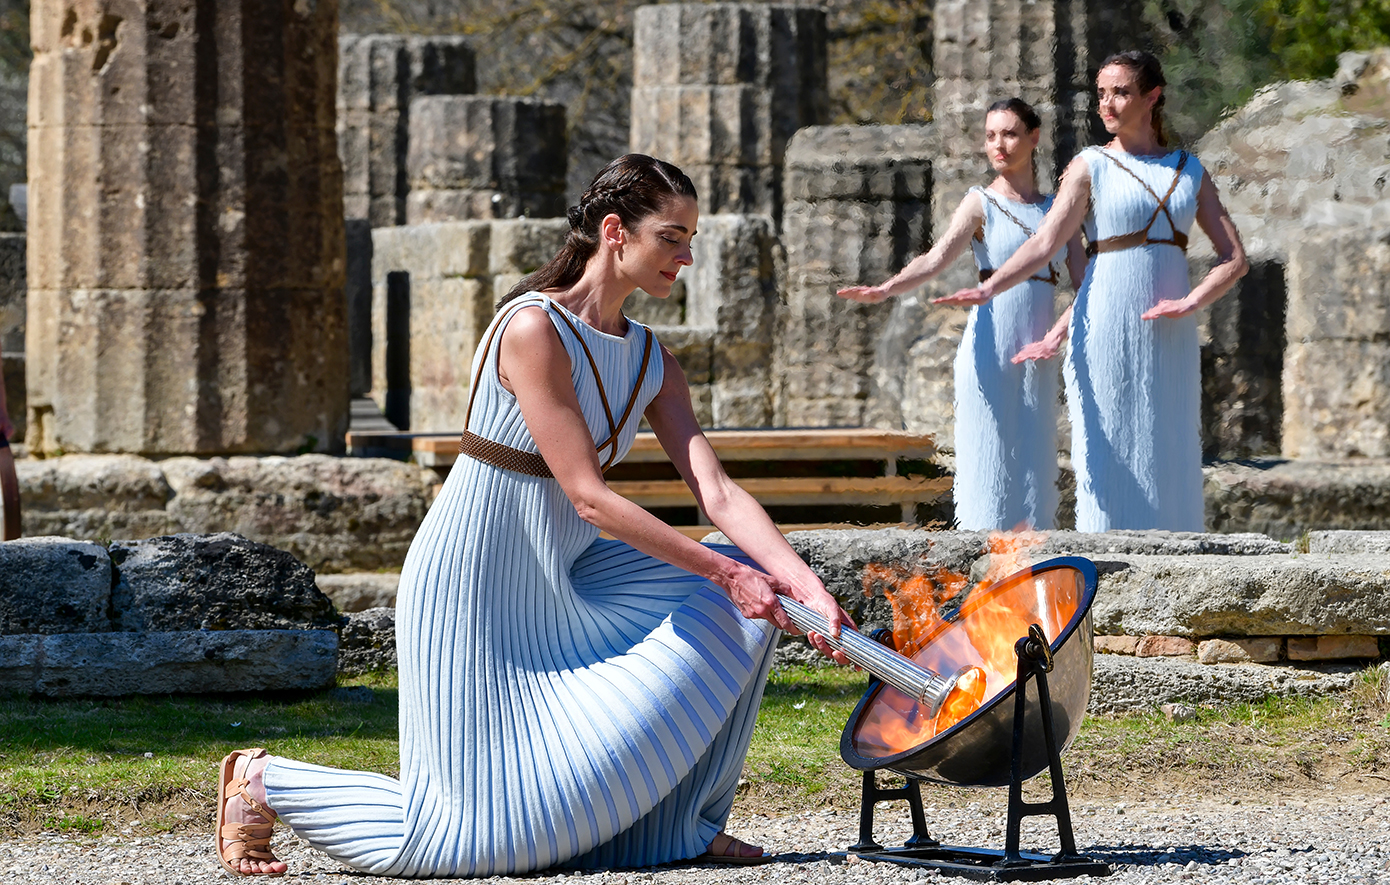 Πόσο έχουν αλλάξει οι σύγχρονοι Ολυμπιακοί Αγώνες από την εποχή της αρχαίας Ελλάδας